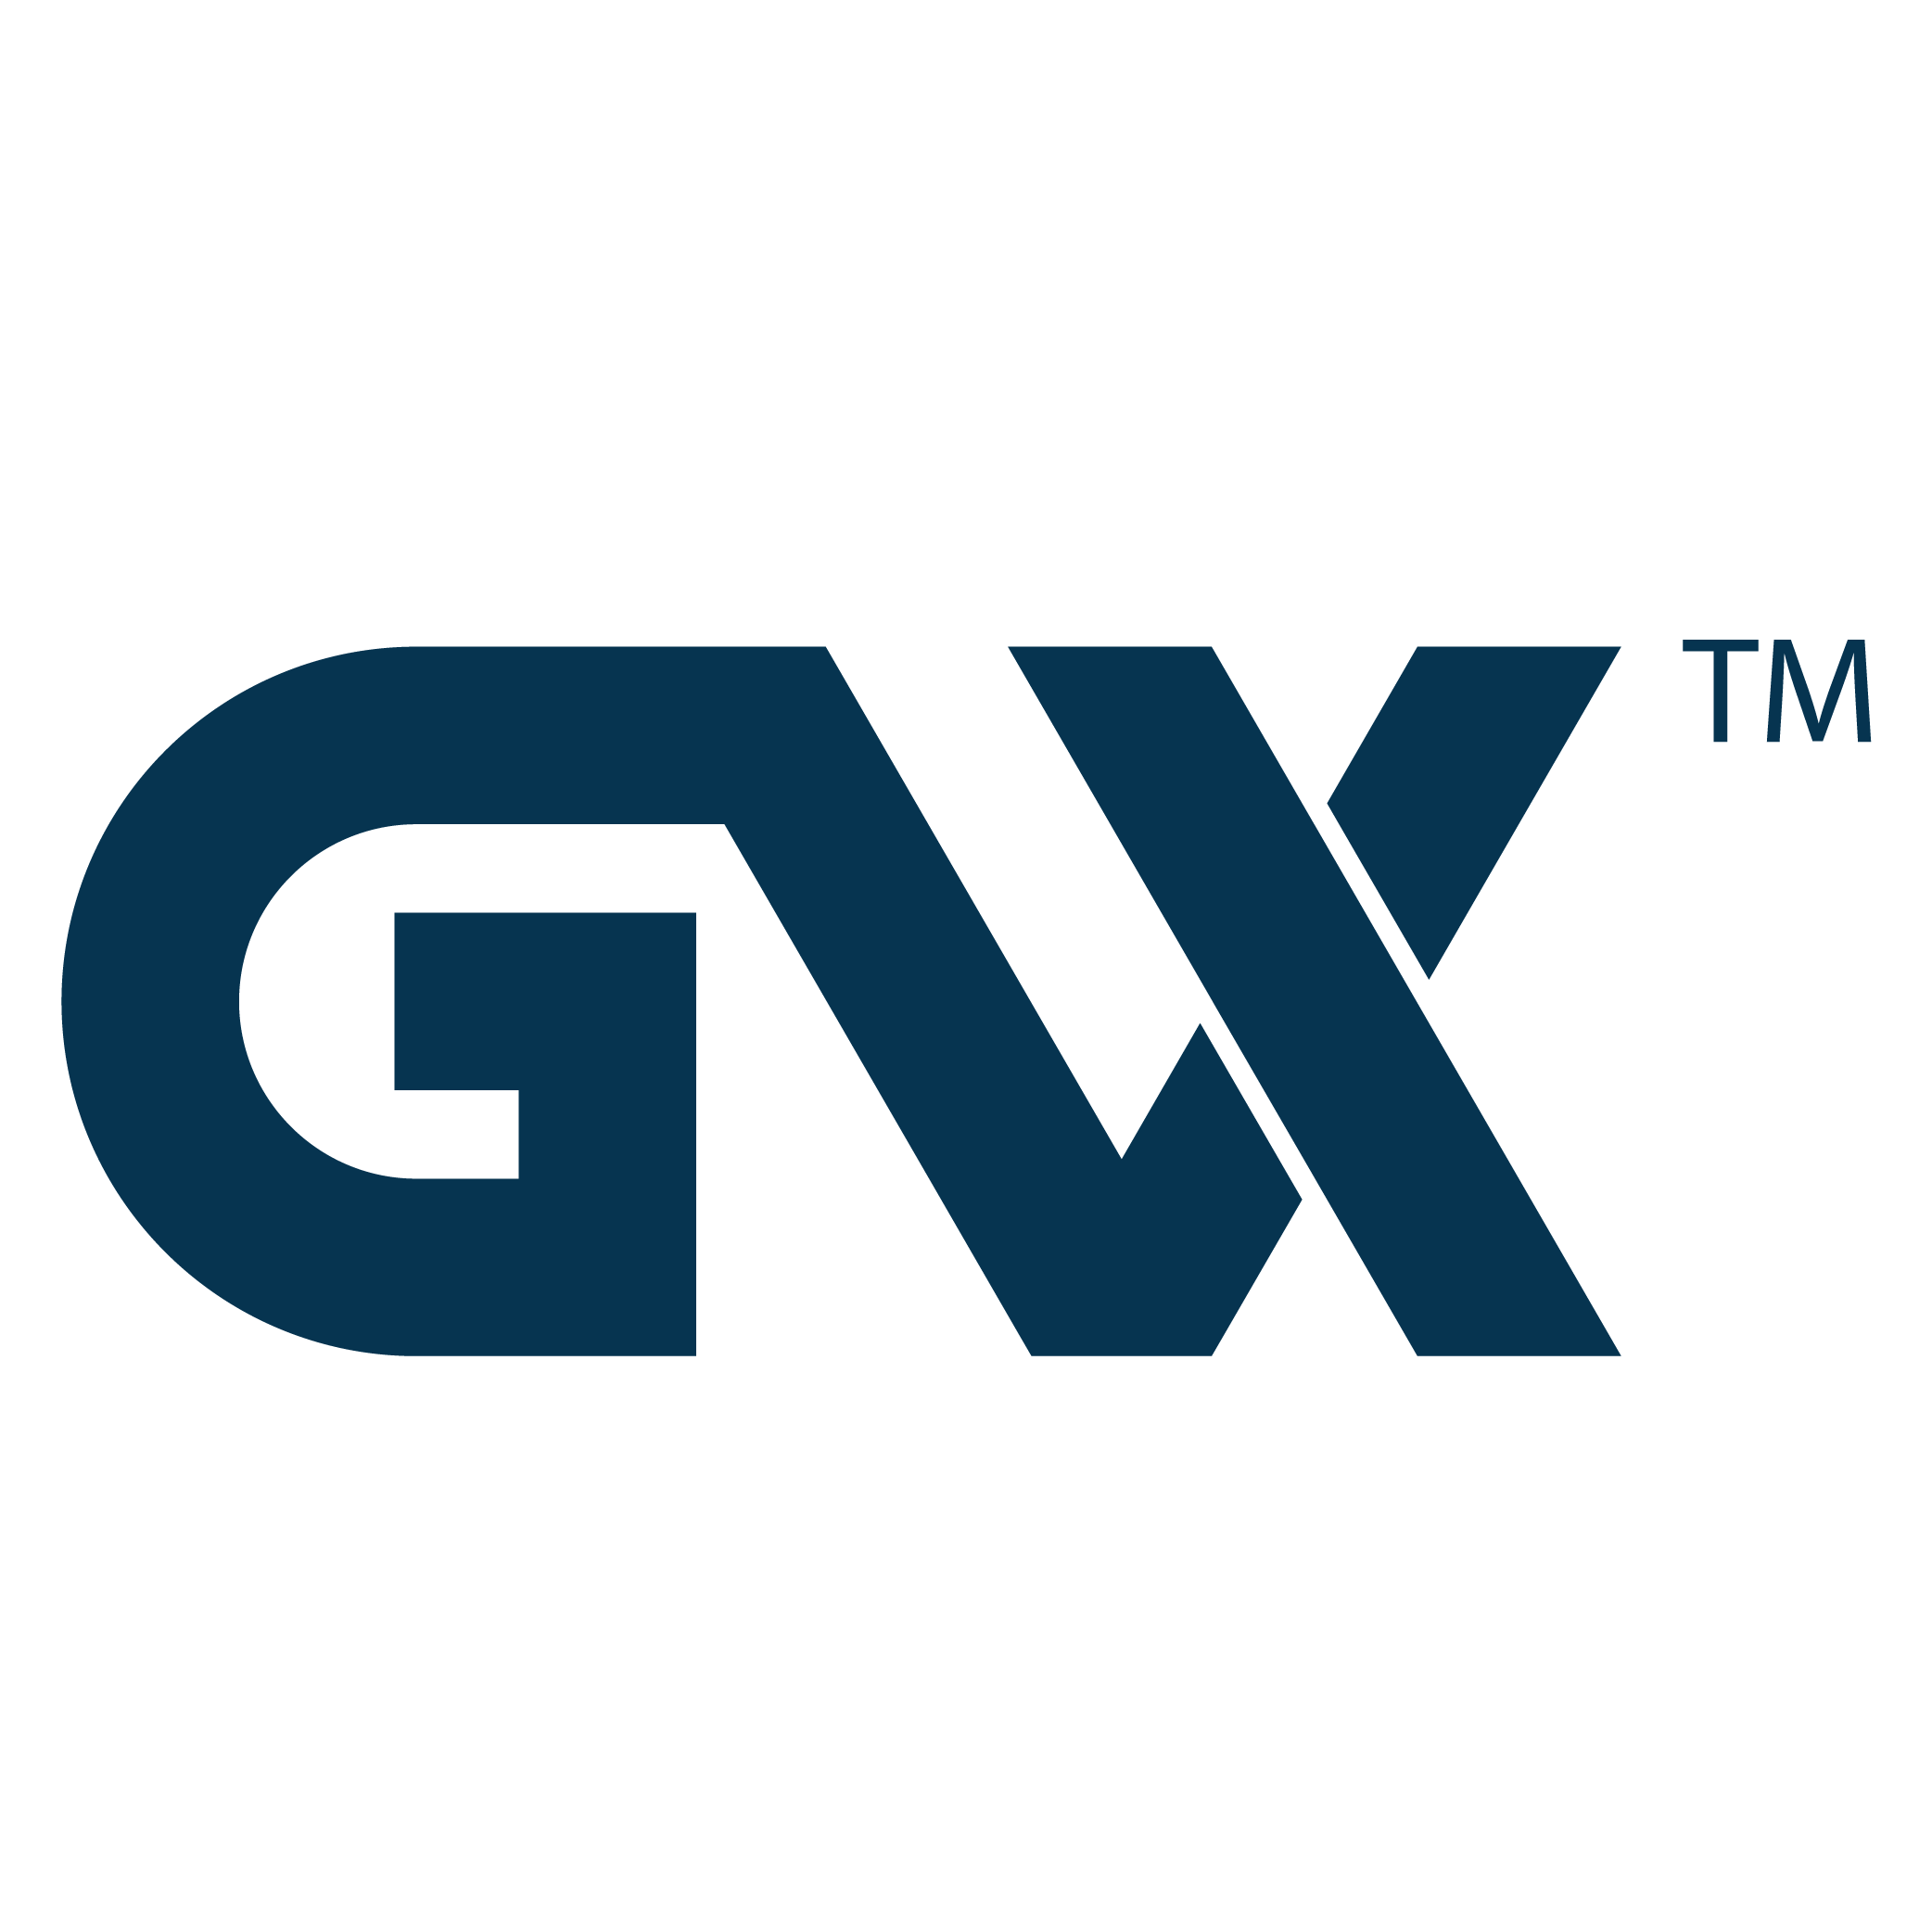 GVX_Blue_no_outline